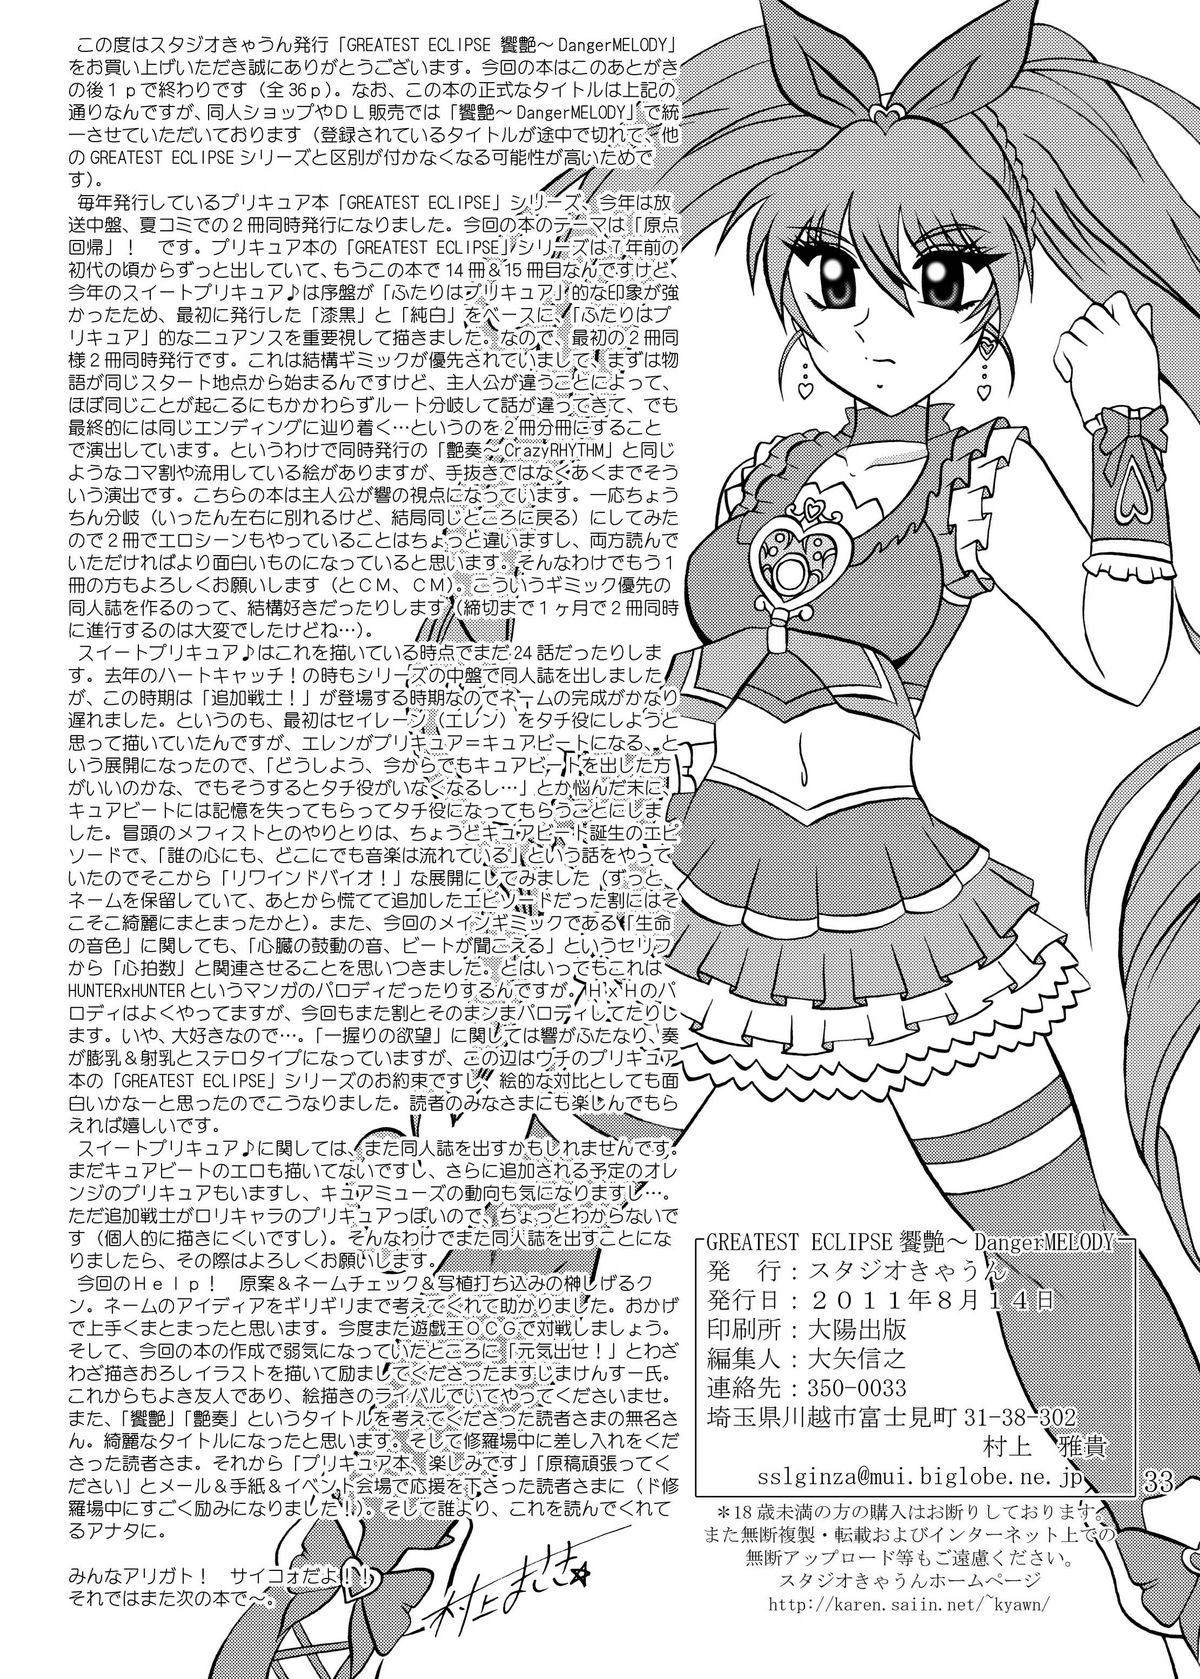 [Studio Kyawn] Kyouen ~Danger MELODY (Suite Precure) page 33 full